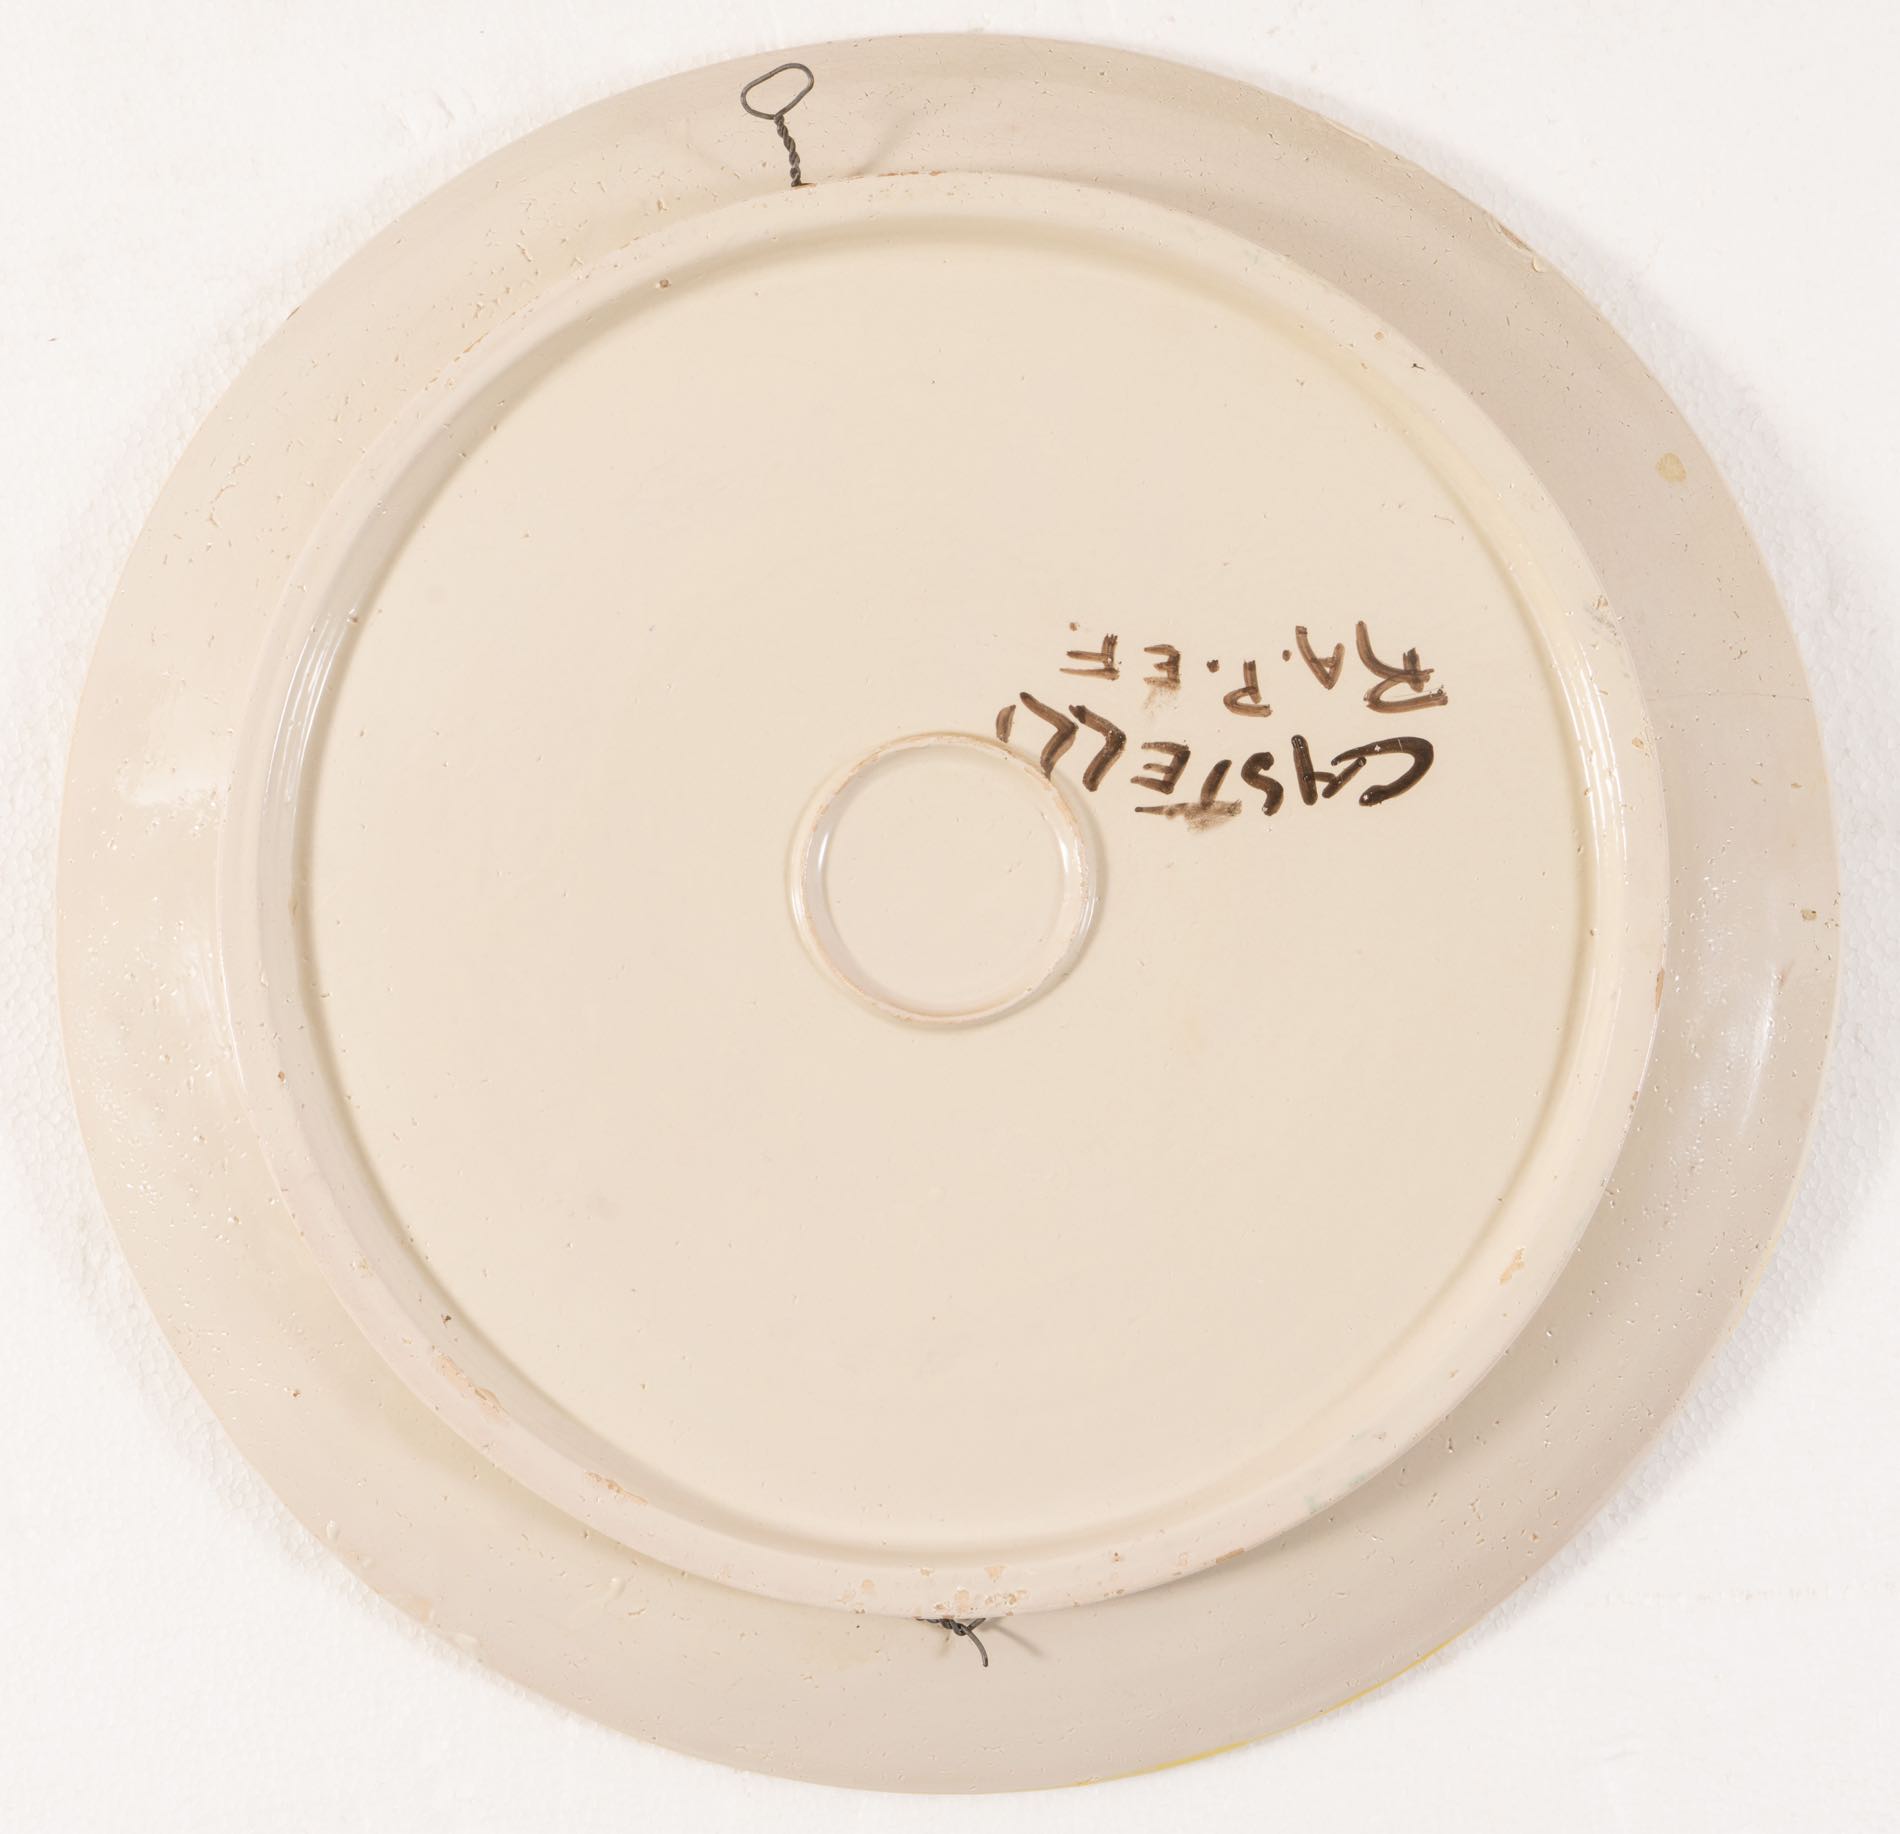 Manifattura Castelli, Coppia di piatti in ceramica, Castelli, XX secolo.Cavetti decorati in - Image 4 of 4